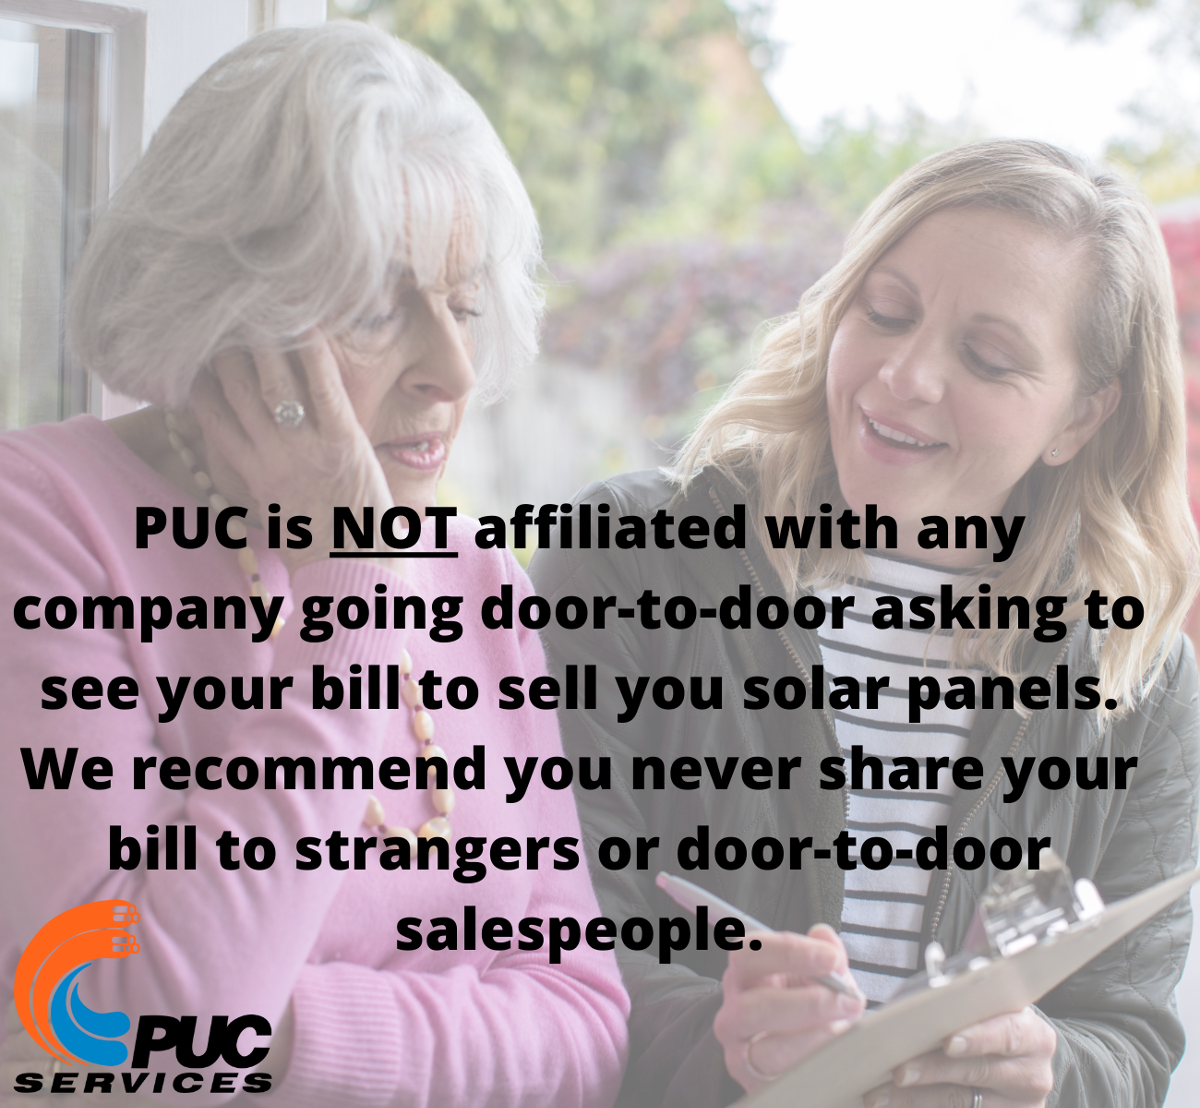 PUC not affiliated with door-to-door salespersons